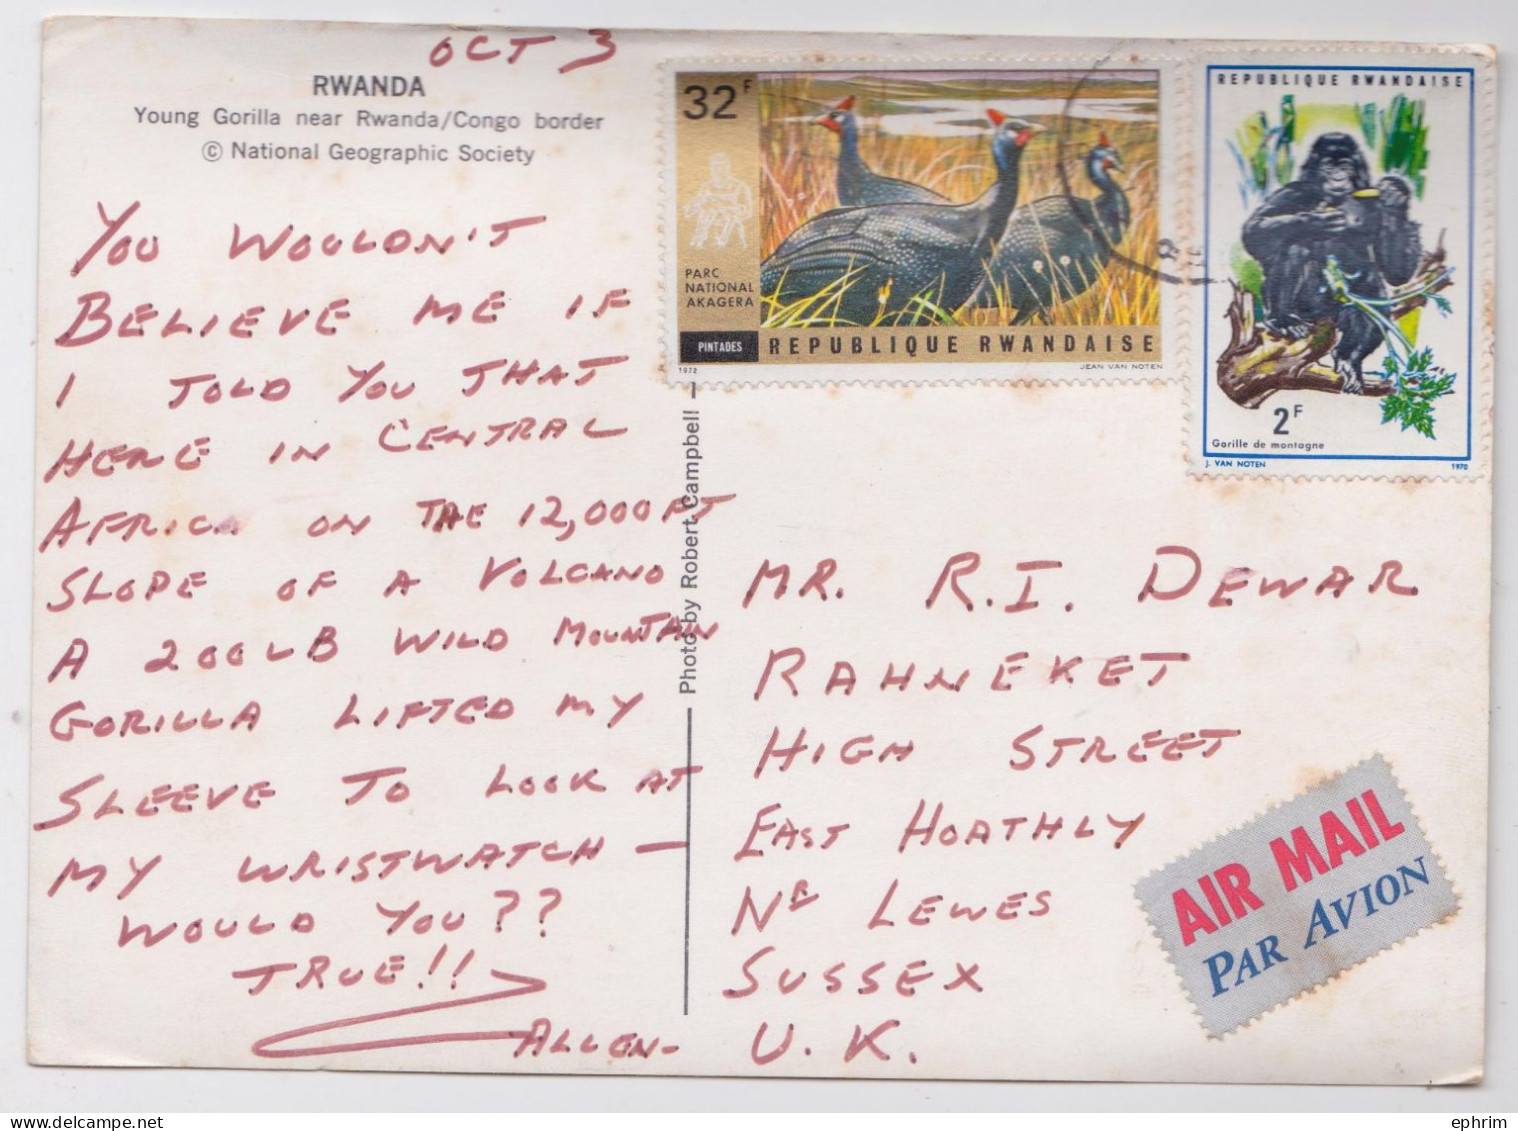 Rwanda Ruanda Carte Postale Timbre Parc National Gorille Gorilla Stamp 1970 Air Mail Postcard - Briefe U. Dokumente